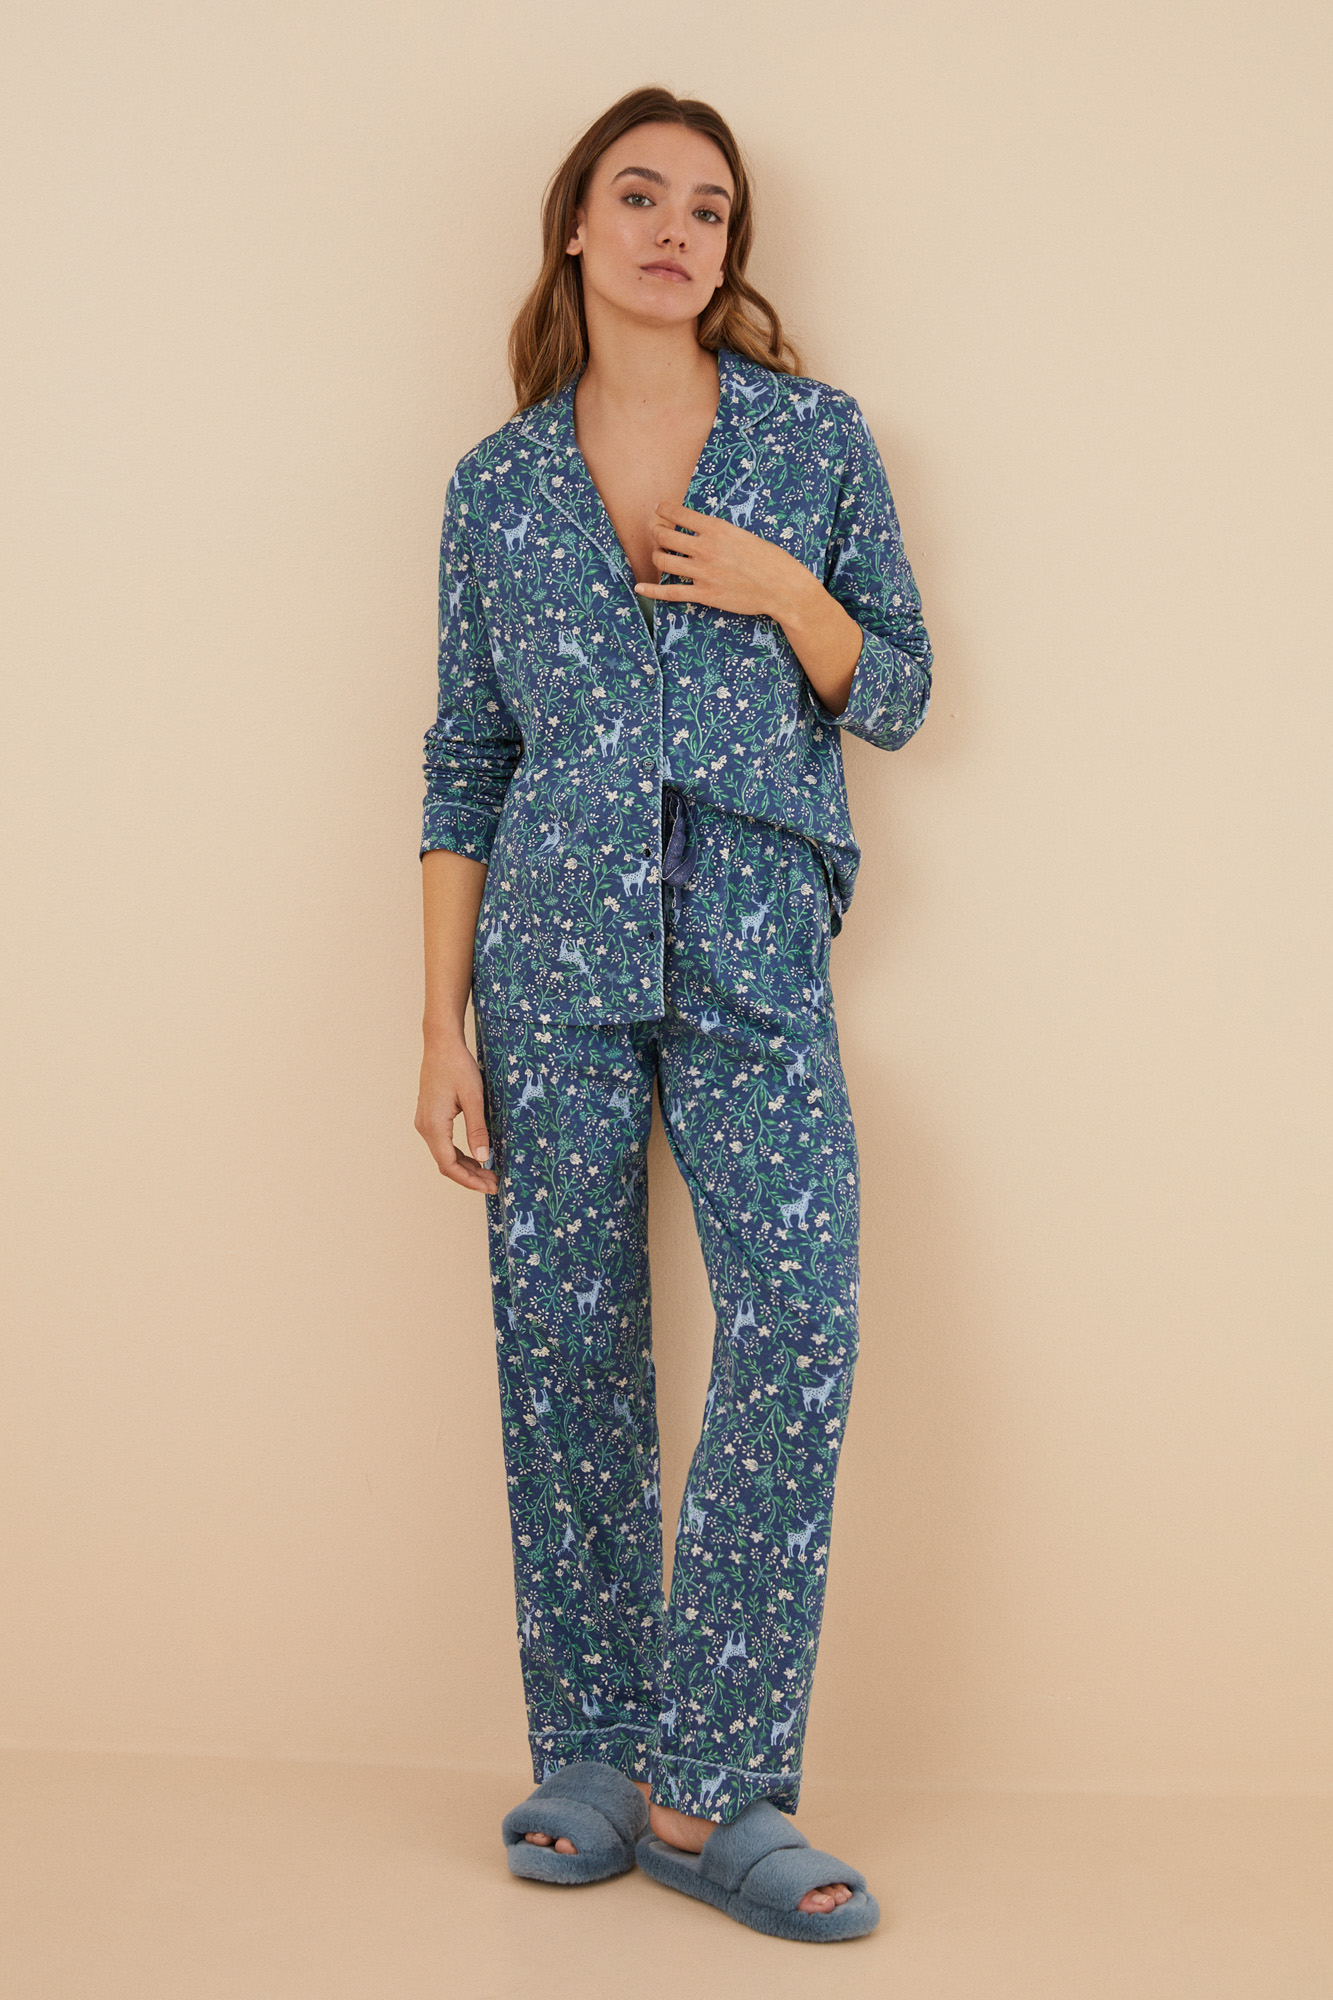 Pijama camisero 100% algodón azul flores | Ropa de dormir de mujer y homewear | WomenSecret